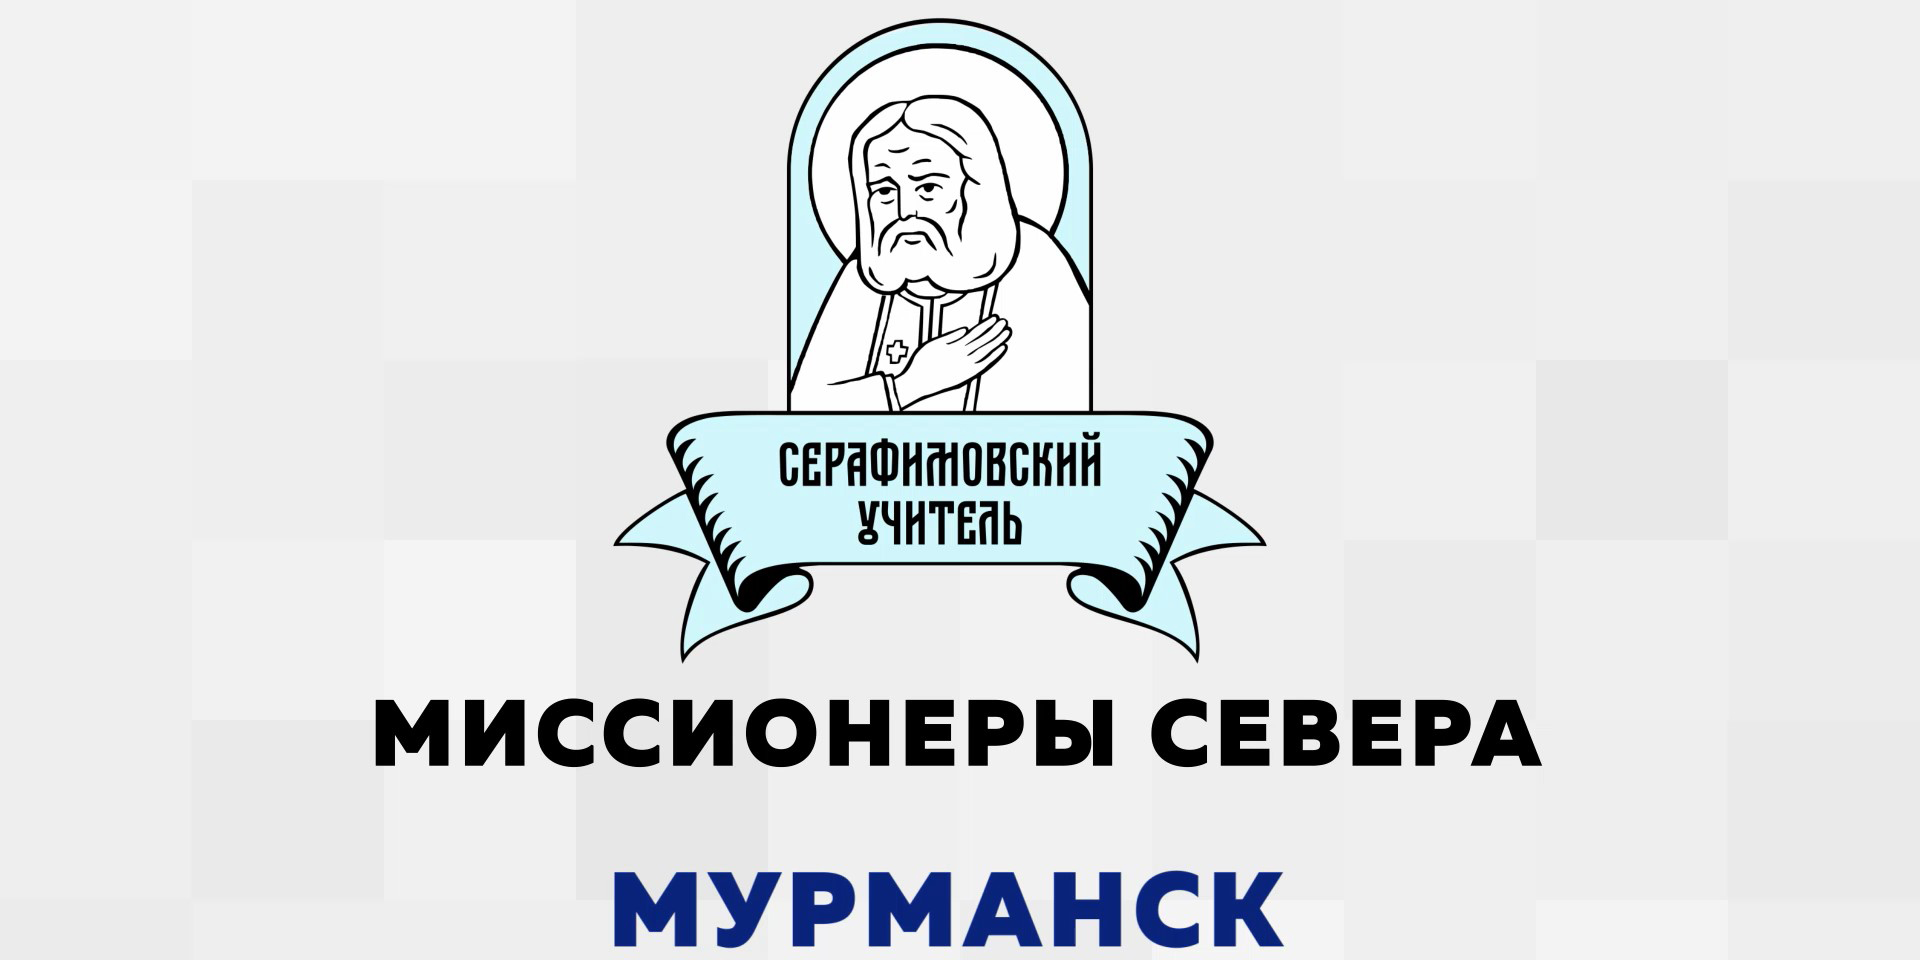 Серафимовский учитель. Миссионеры севера. Мурманск